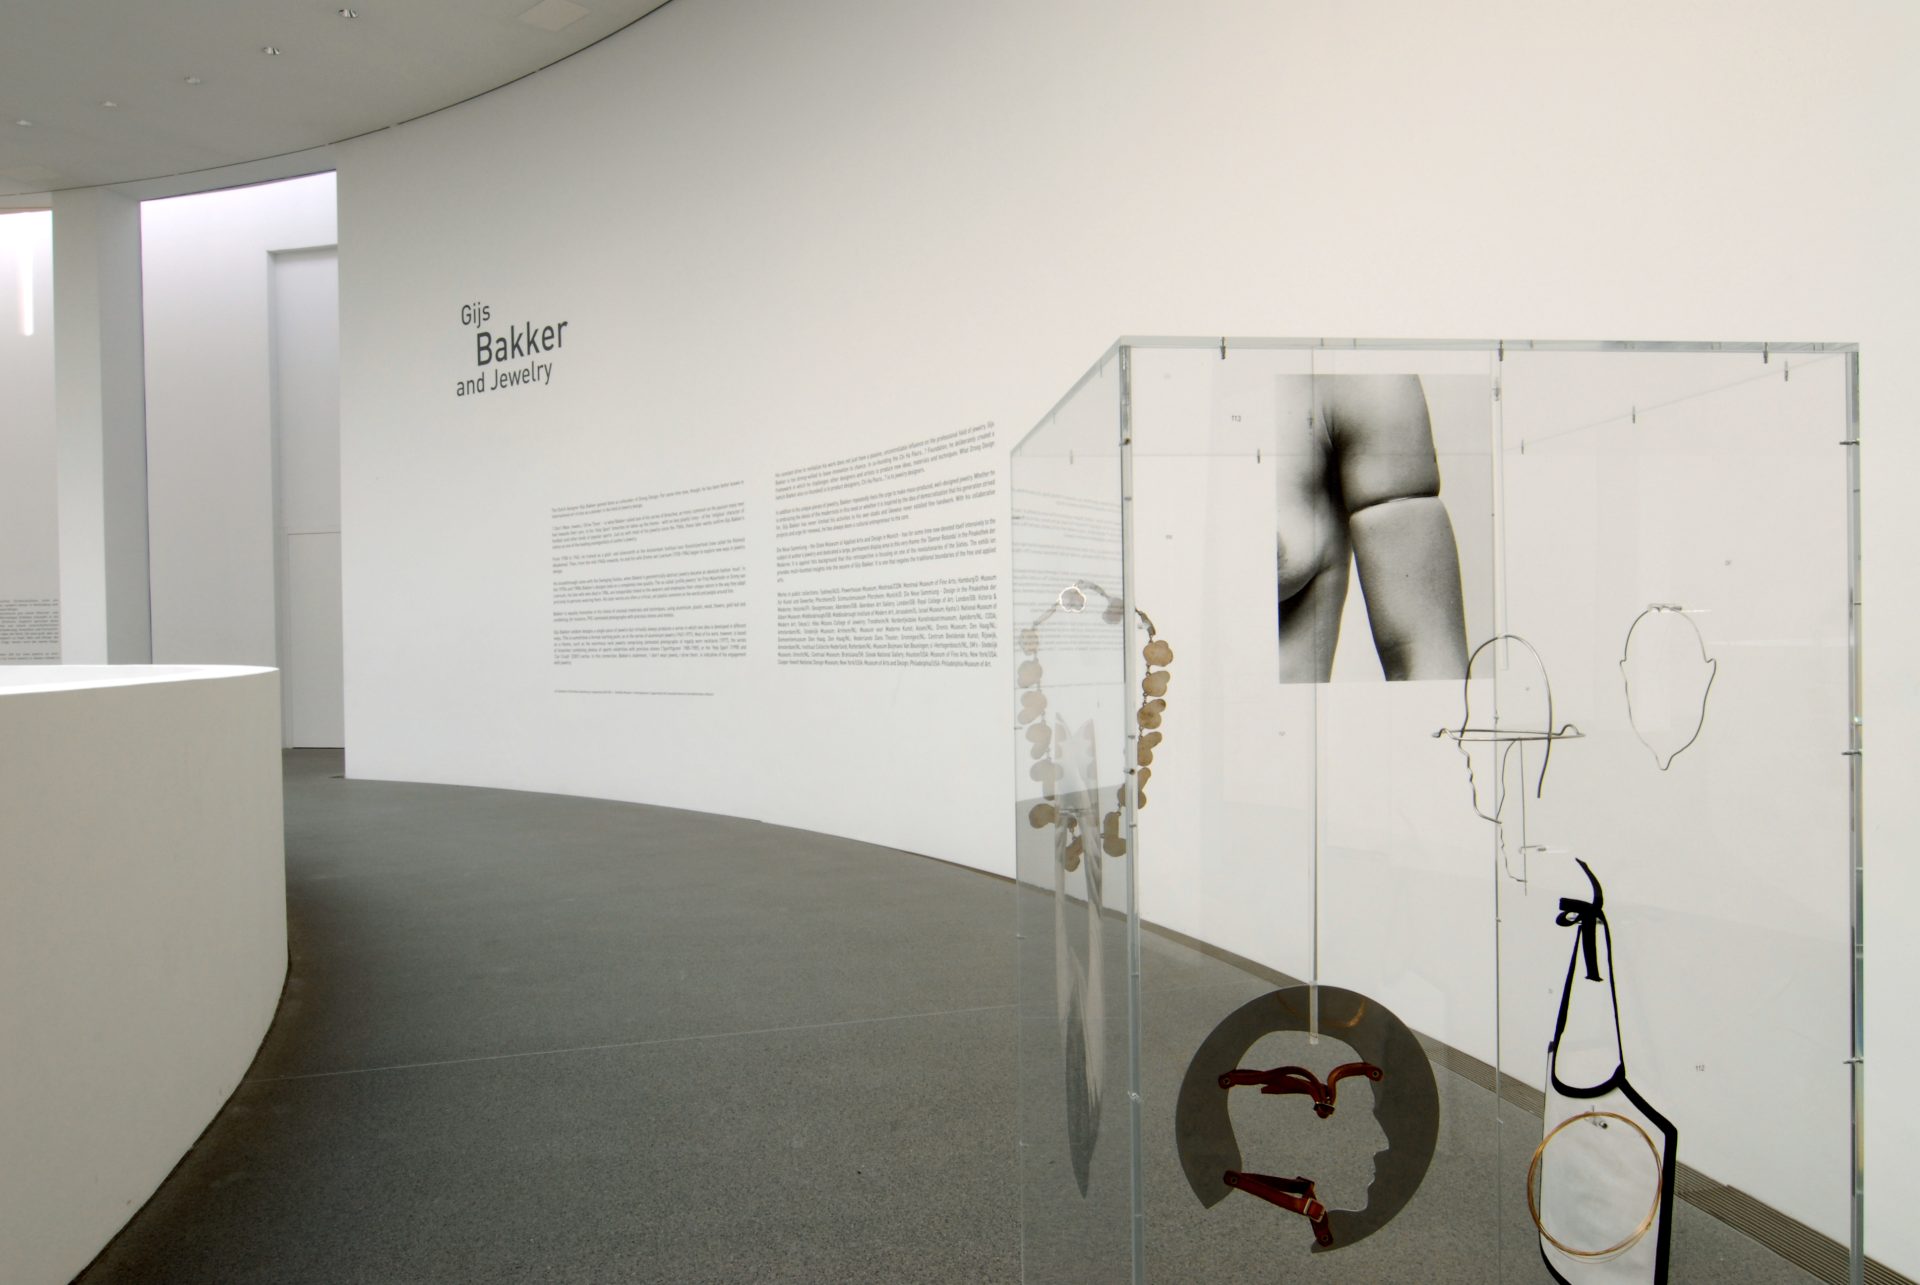 Das Bild zeigt den Wandtext der Ausstellung. rechts davor ist eine hohe Glasvitrine mit einer Installation aus verschiedenen, schwebenden Metallobjekten und einem Schwarz-Weiß-Druck von einem Körperausschnitt. Dieser zeigt eine nackte Schulter mit Oberarm und Brust. Am Oberarm befindet sich ein Armreif.